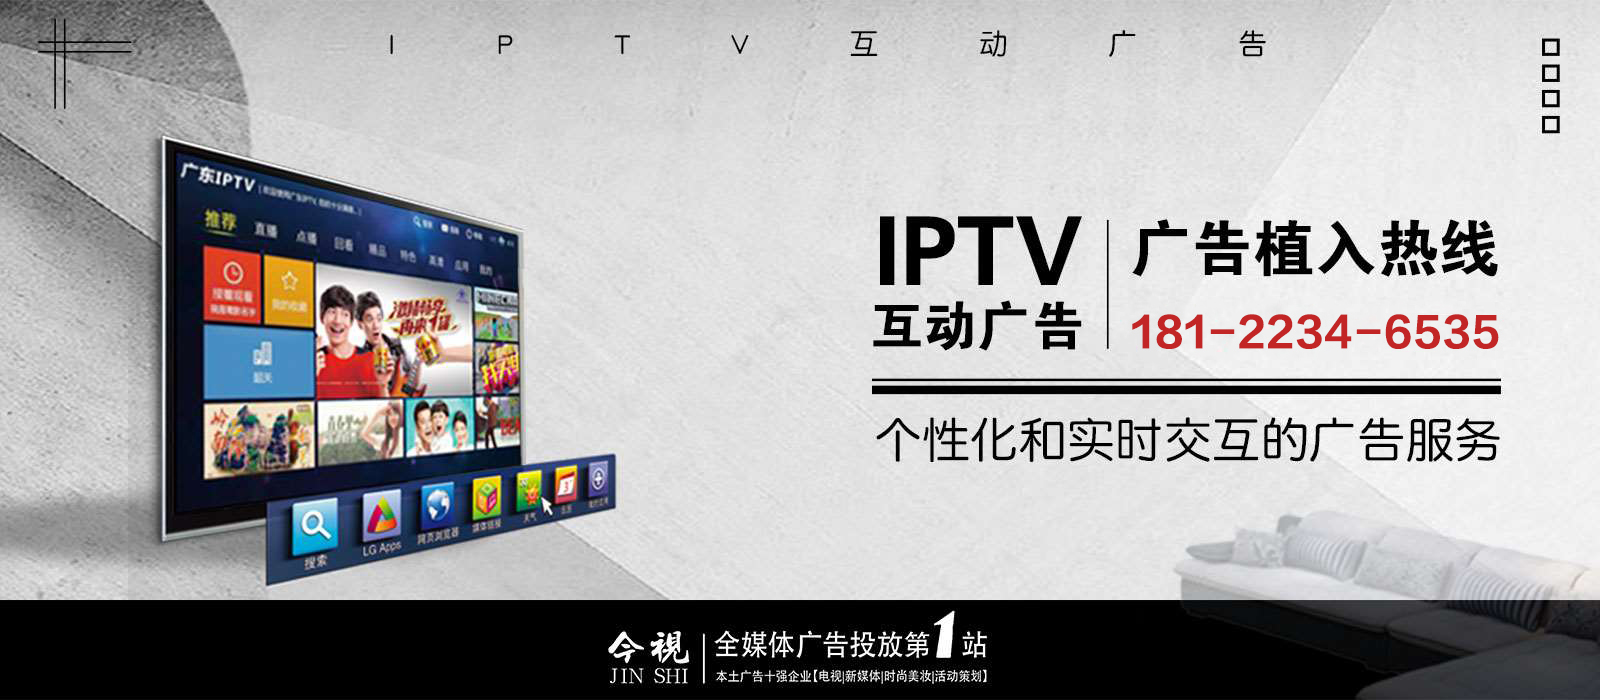 IPTV廣告投放電話400-158-3088